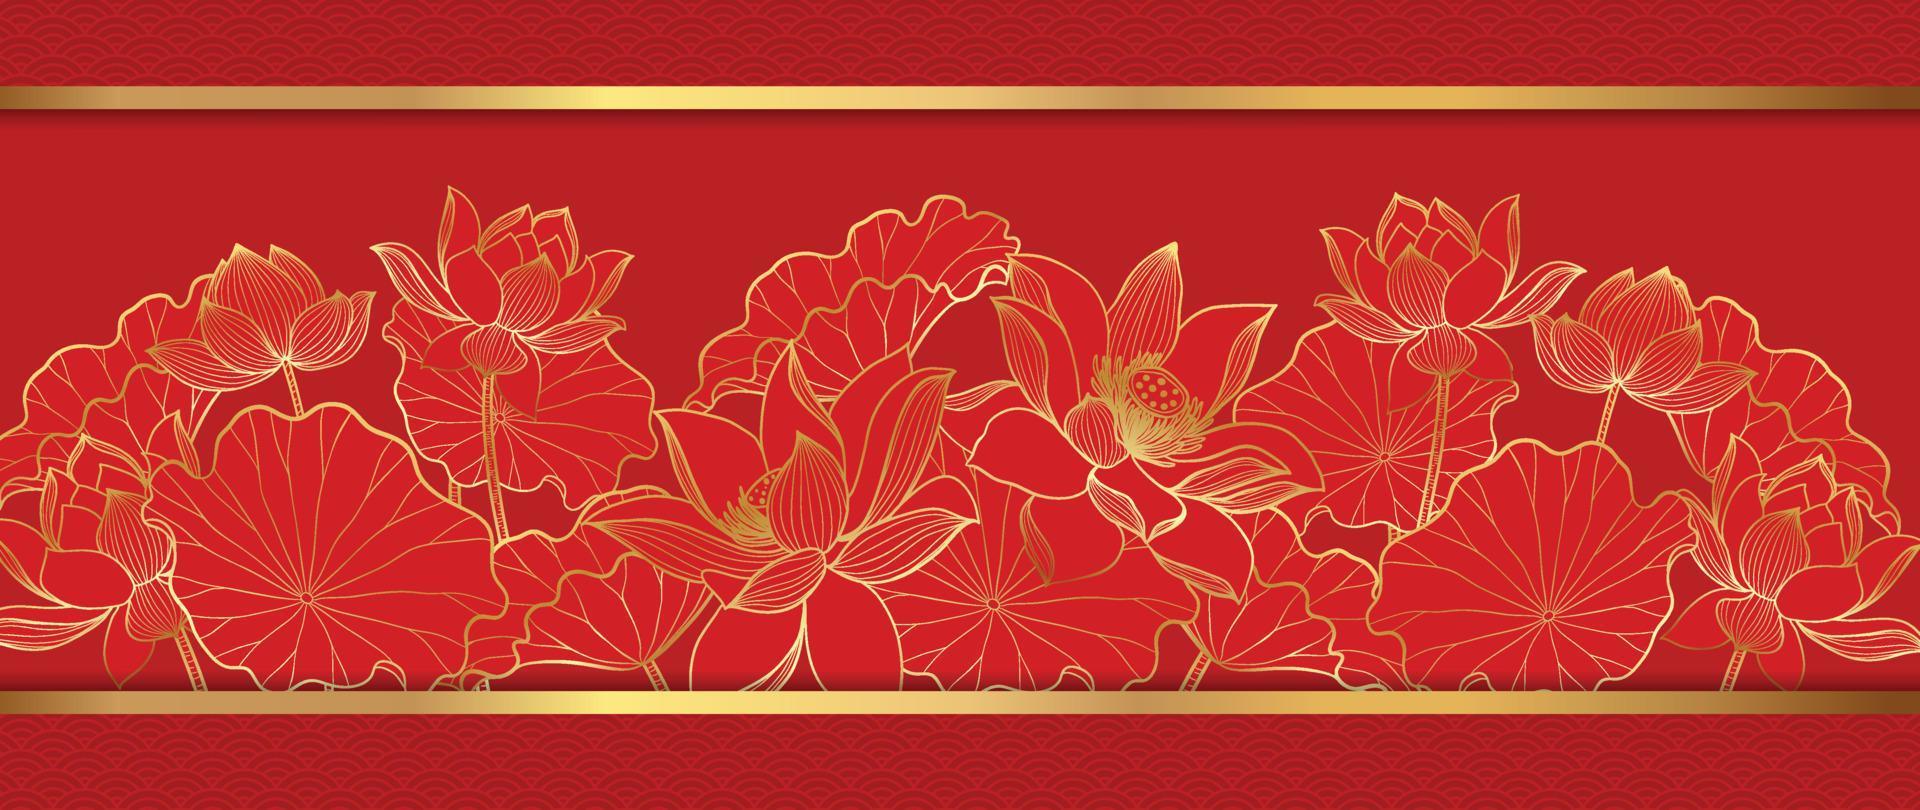 vector de fondo de patrón de estilo de lujo de feliz año nuevo chino. arte de línea dorada de flor de loto en marco dorado sobre fondo rojo. ilustración de diseño para papel tapiz, tarjeta, afiche, empaque, publicidad.